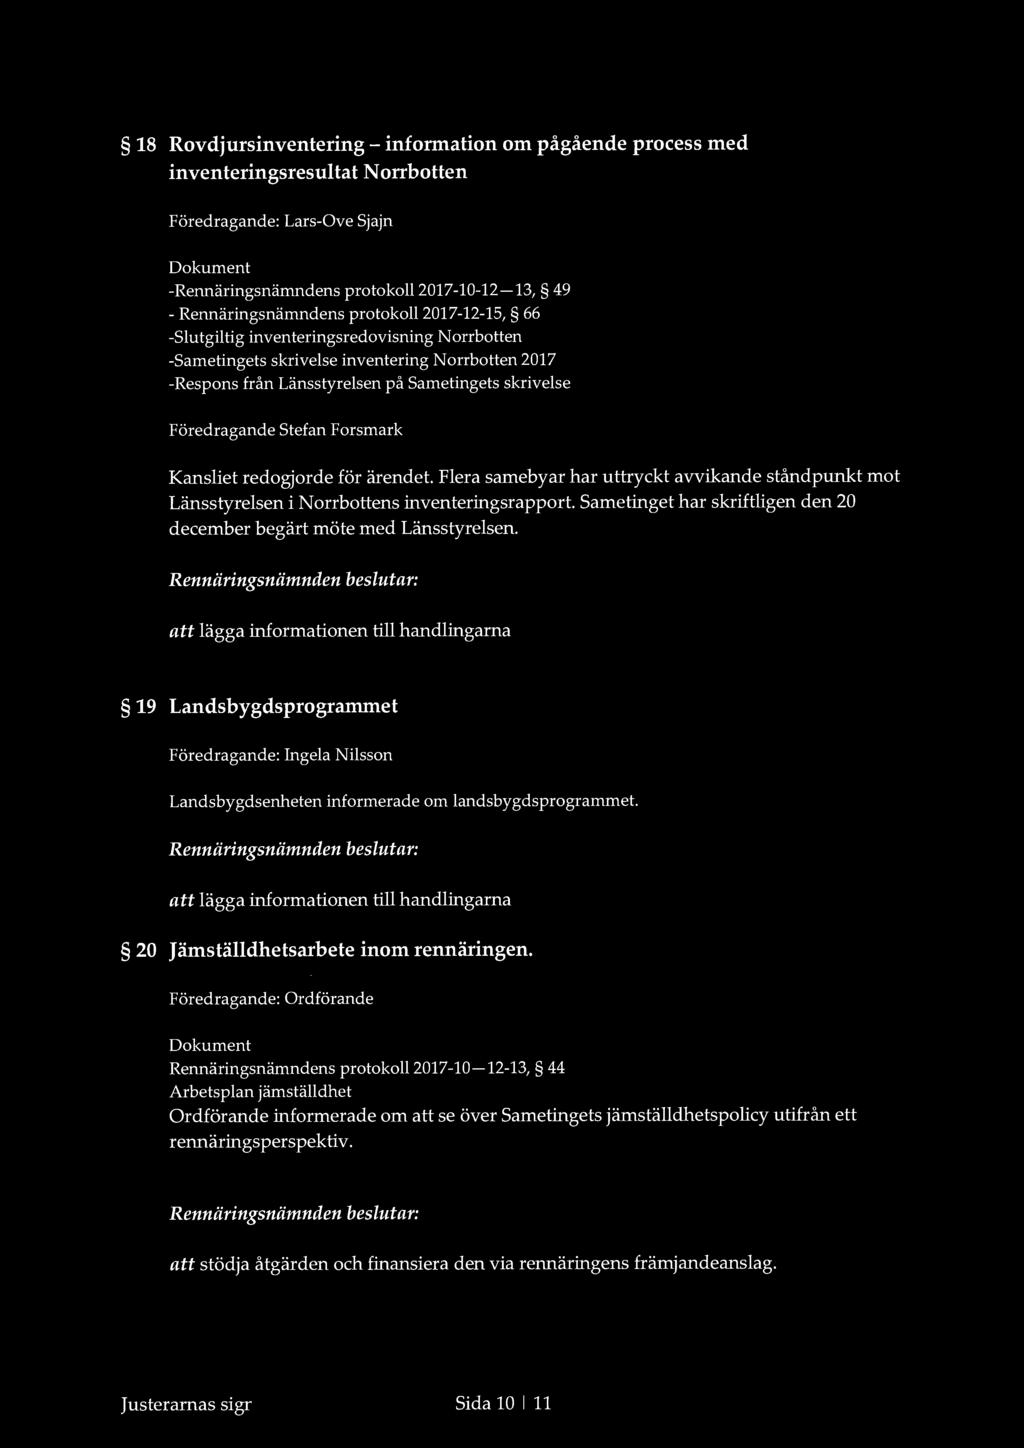 18 Rovdjursinventering- information om pågående process med inventeringsresultat Norrbotten -Rennäringsnämndens protokoll2017-10-12-13, 49 - Rennäringsnämndens protokoll2017-12-15, 66 -slutgiltig